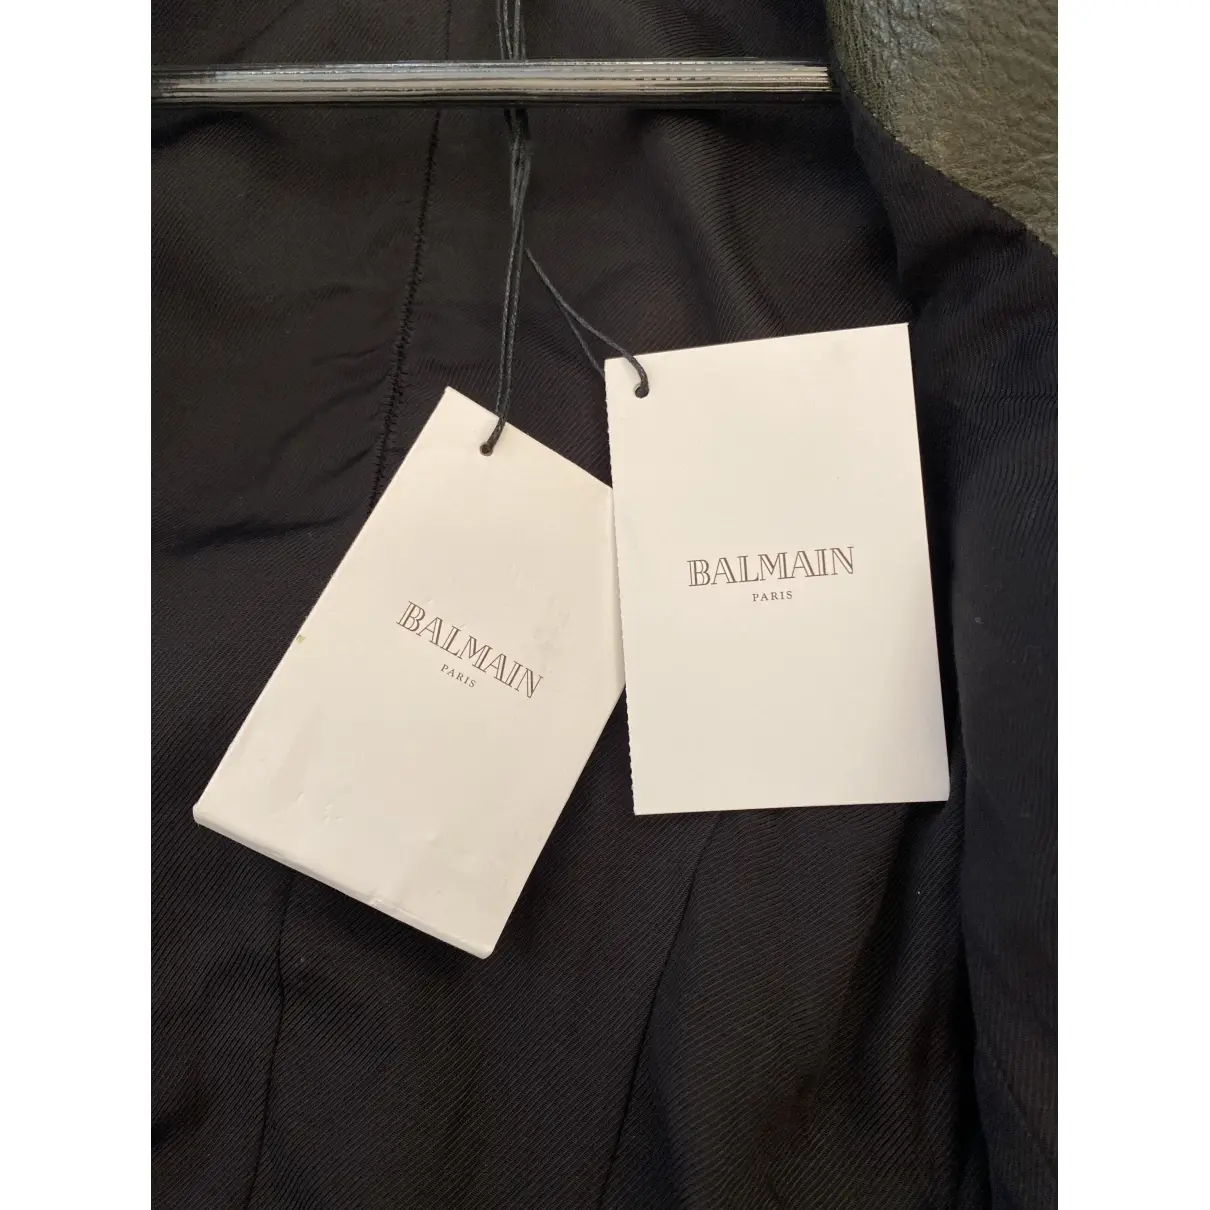 Leather blazer Balmain